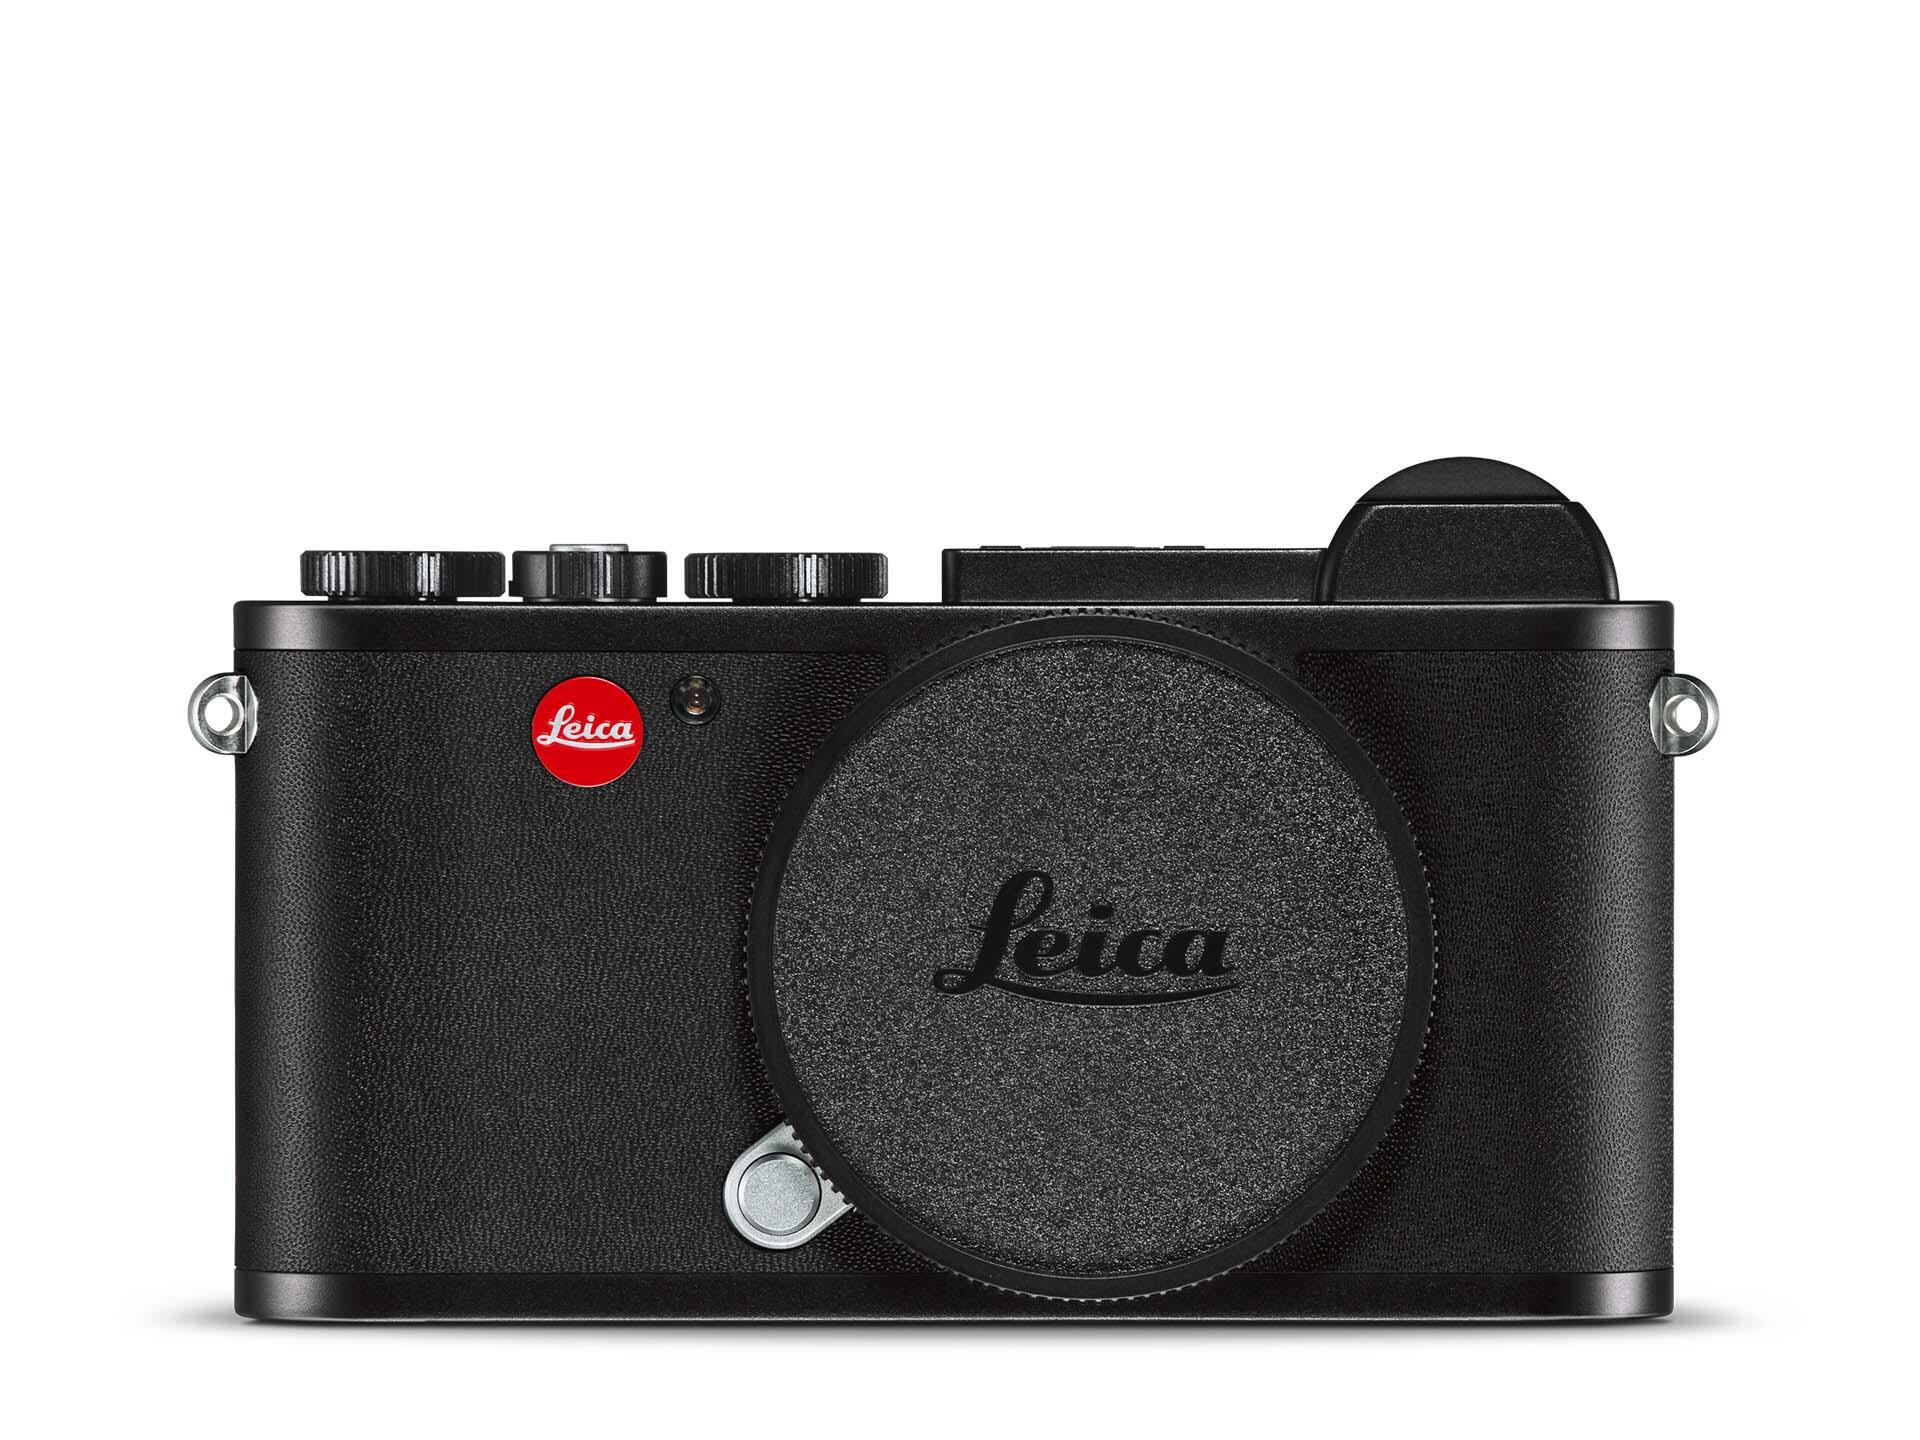 Leica CL | Leica Camera US